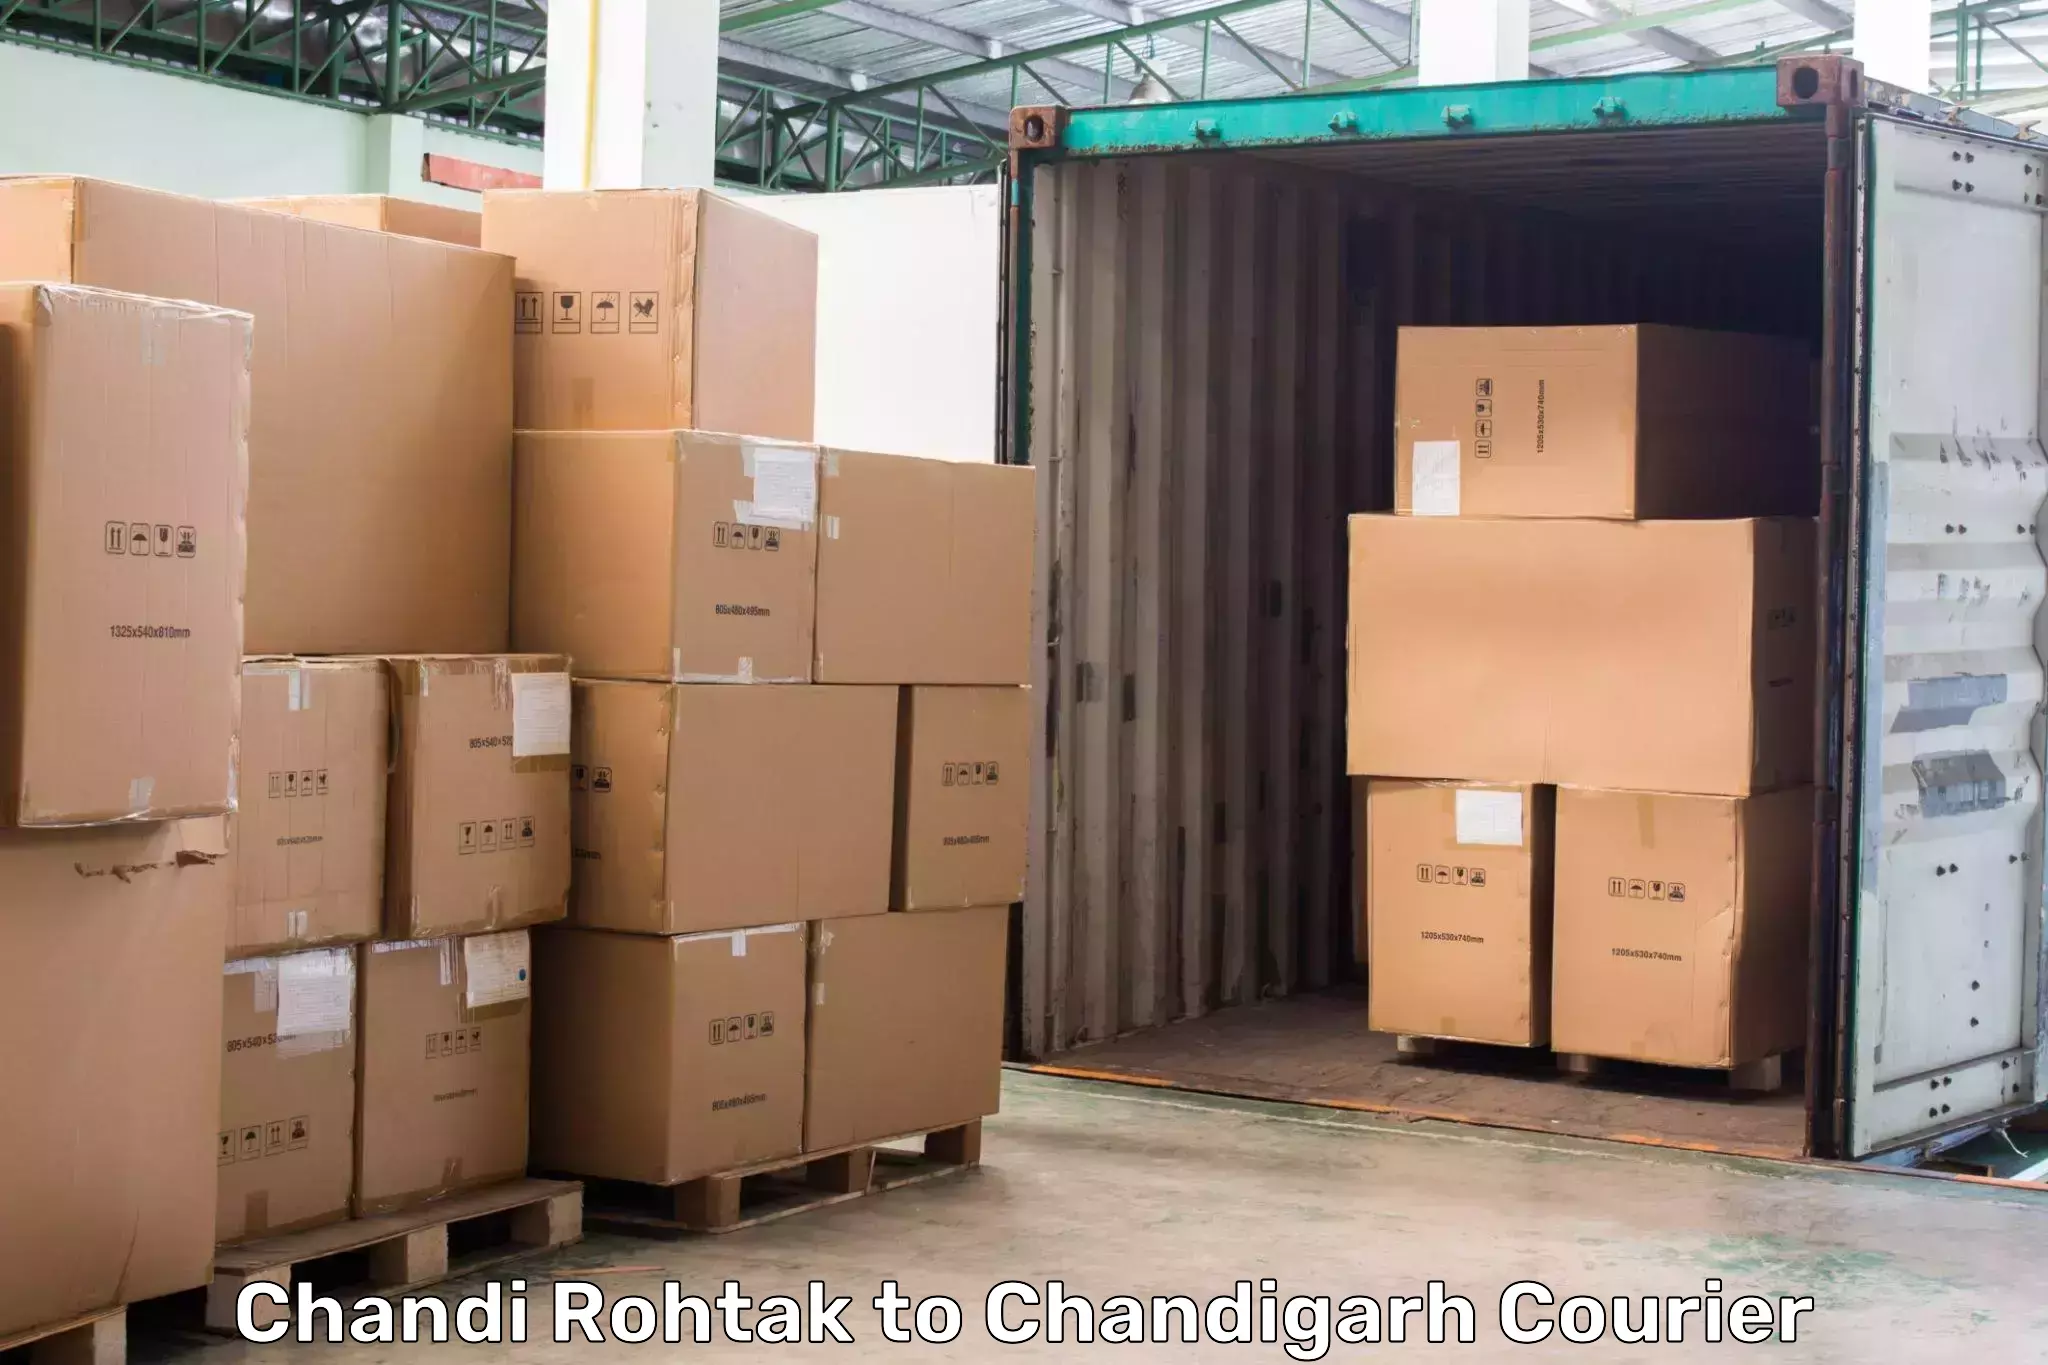 Express mail service Chandi Rohtak to Chandigarh